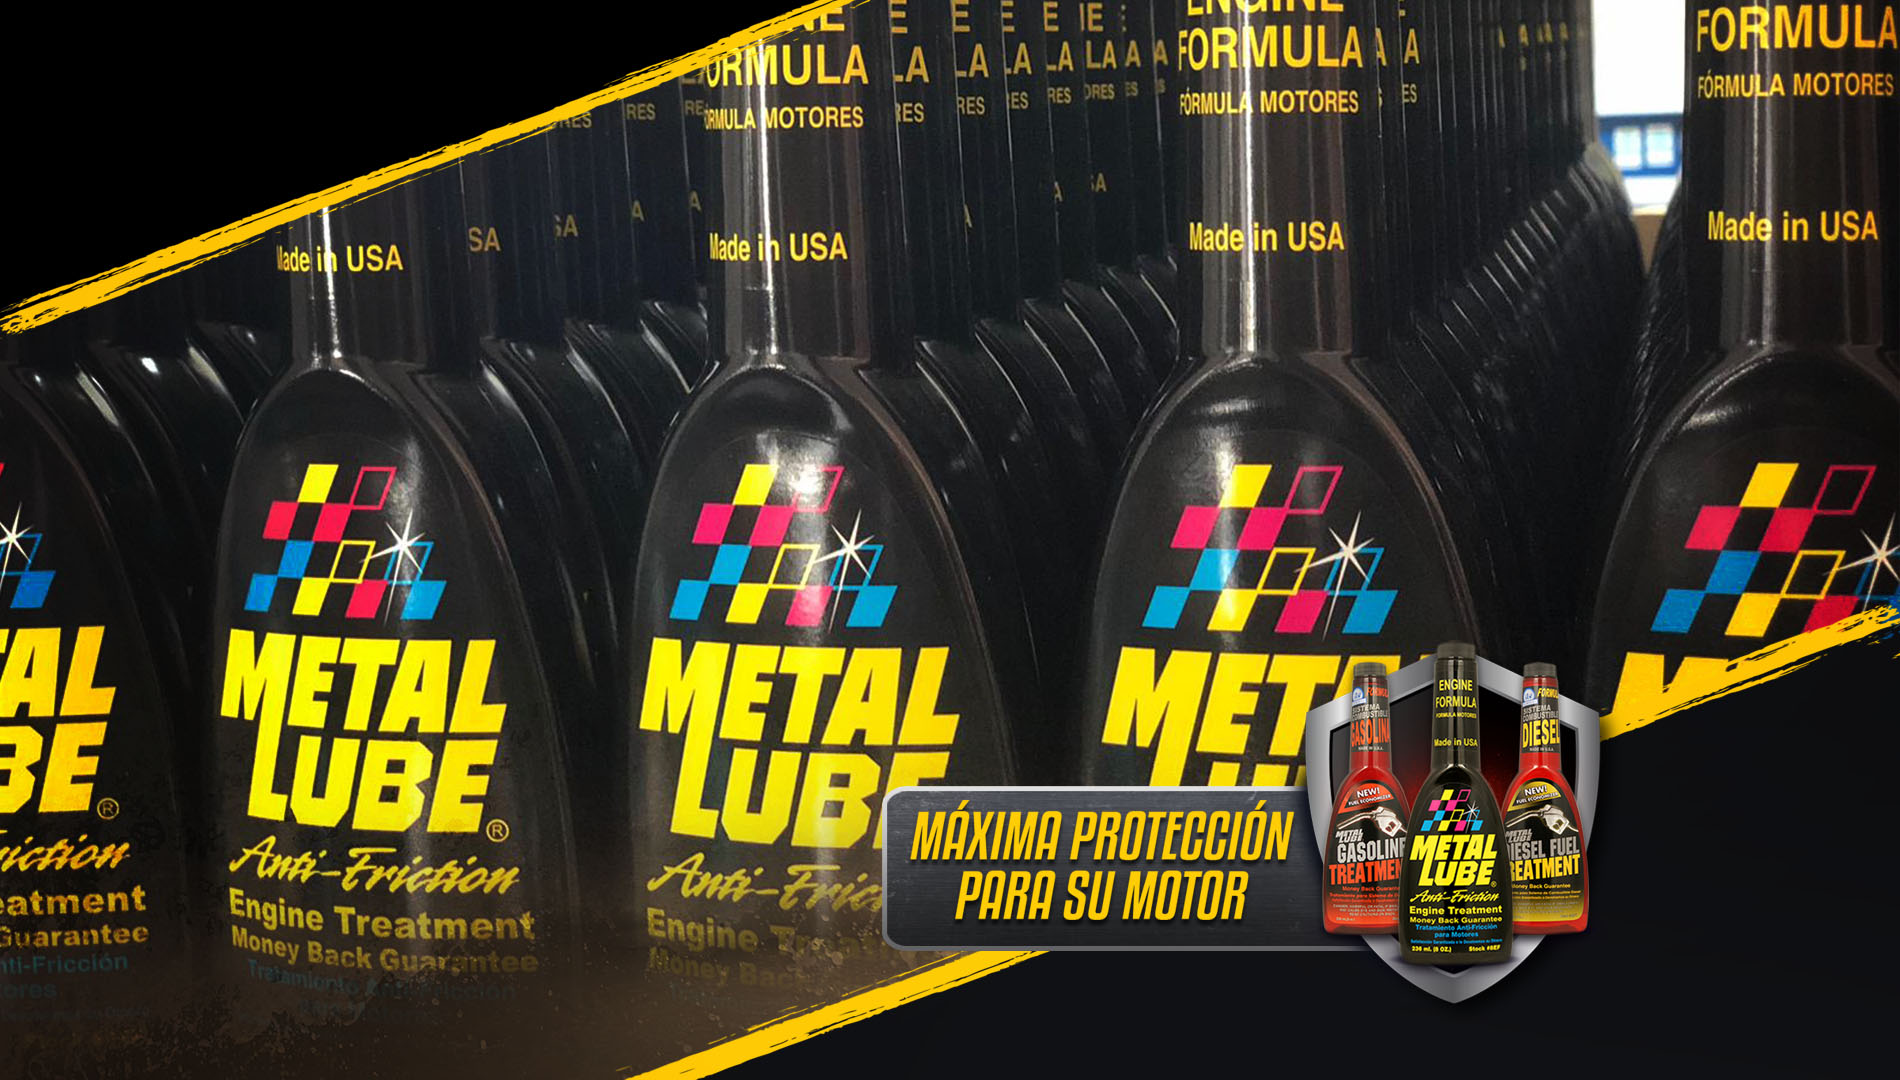 Metal Lube, Catálogo de productos